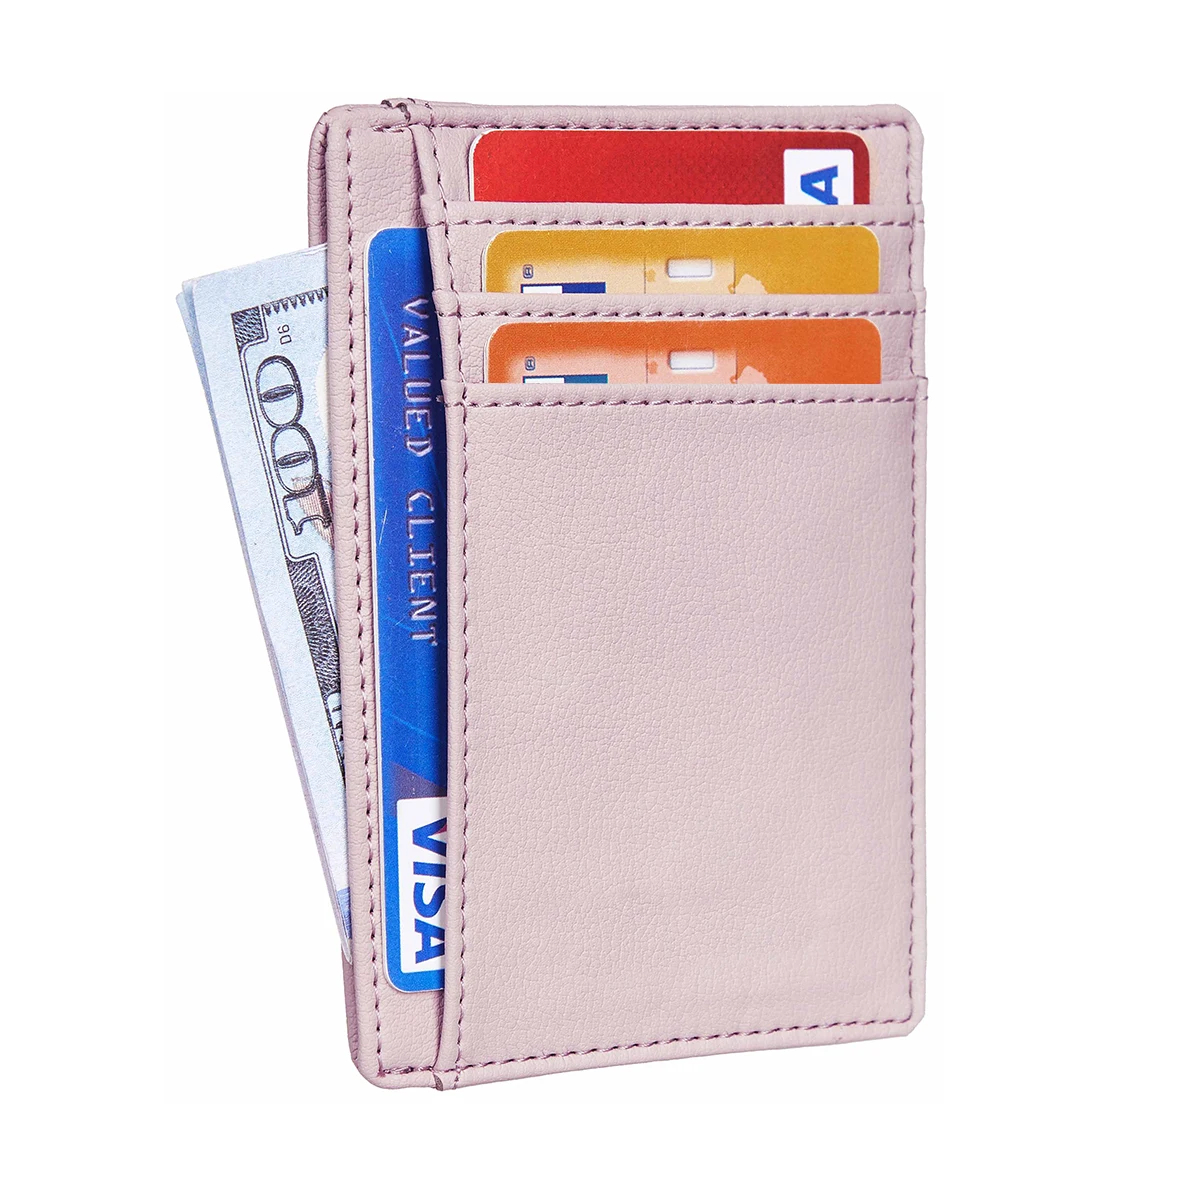 Brugerdefineret frontlomme minimalistisk kortholder wallet mode